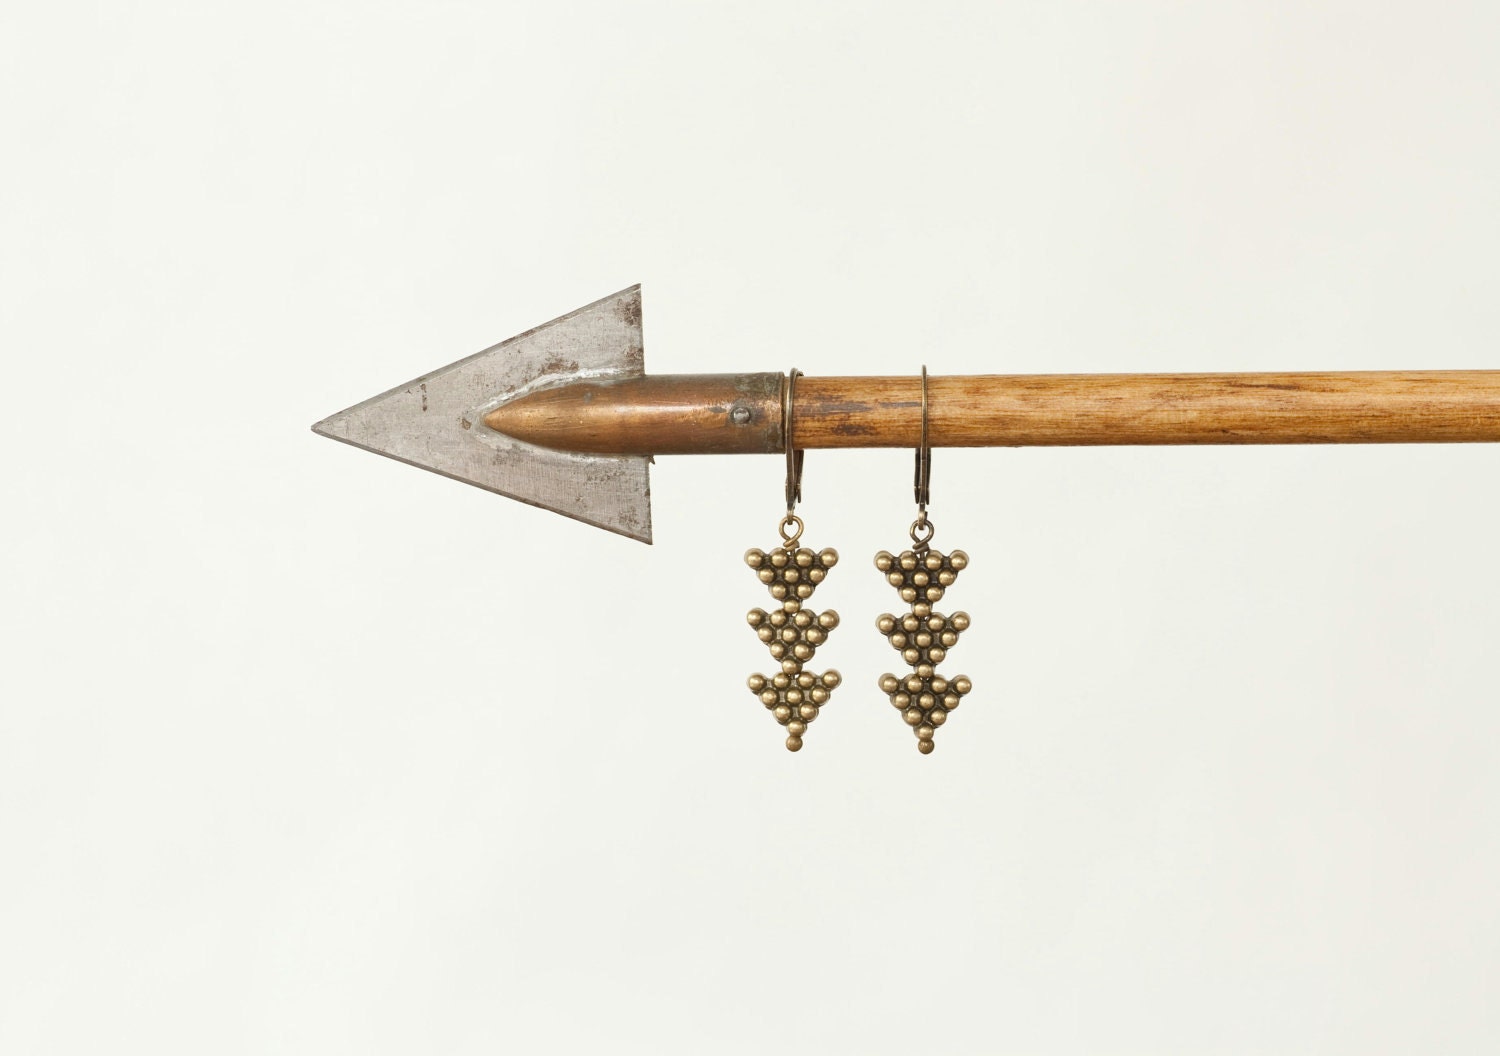 Little Arrows - Tribal Brass Arrow Drop Earrings by Prairieoats